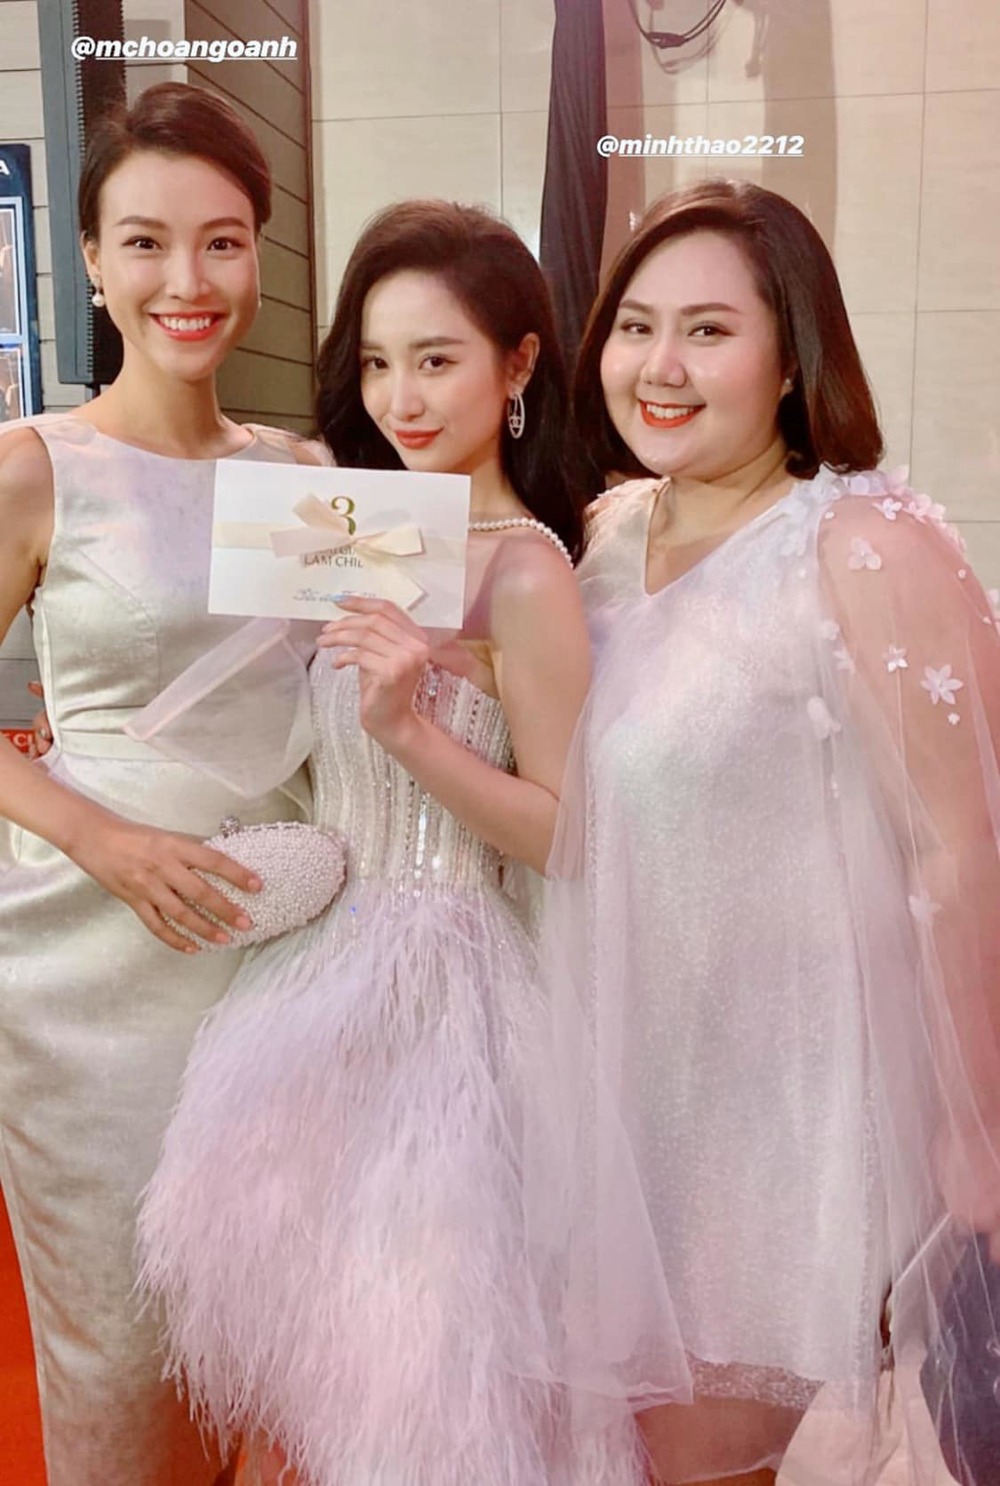  
Hoàng Oanh - Jun Vũ - Minh Thảo cùng diện kiểu váy với tông trắng - Tin sao Viet - Tin tuc sao Viet - Scandal sao Viet - Tin tuc cua Sao - Tin cua Sao